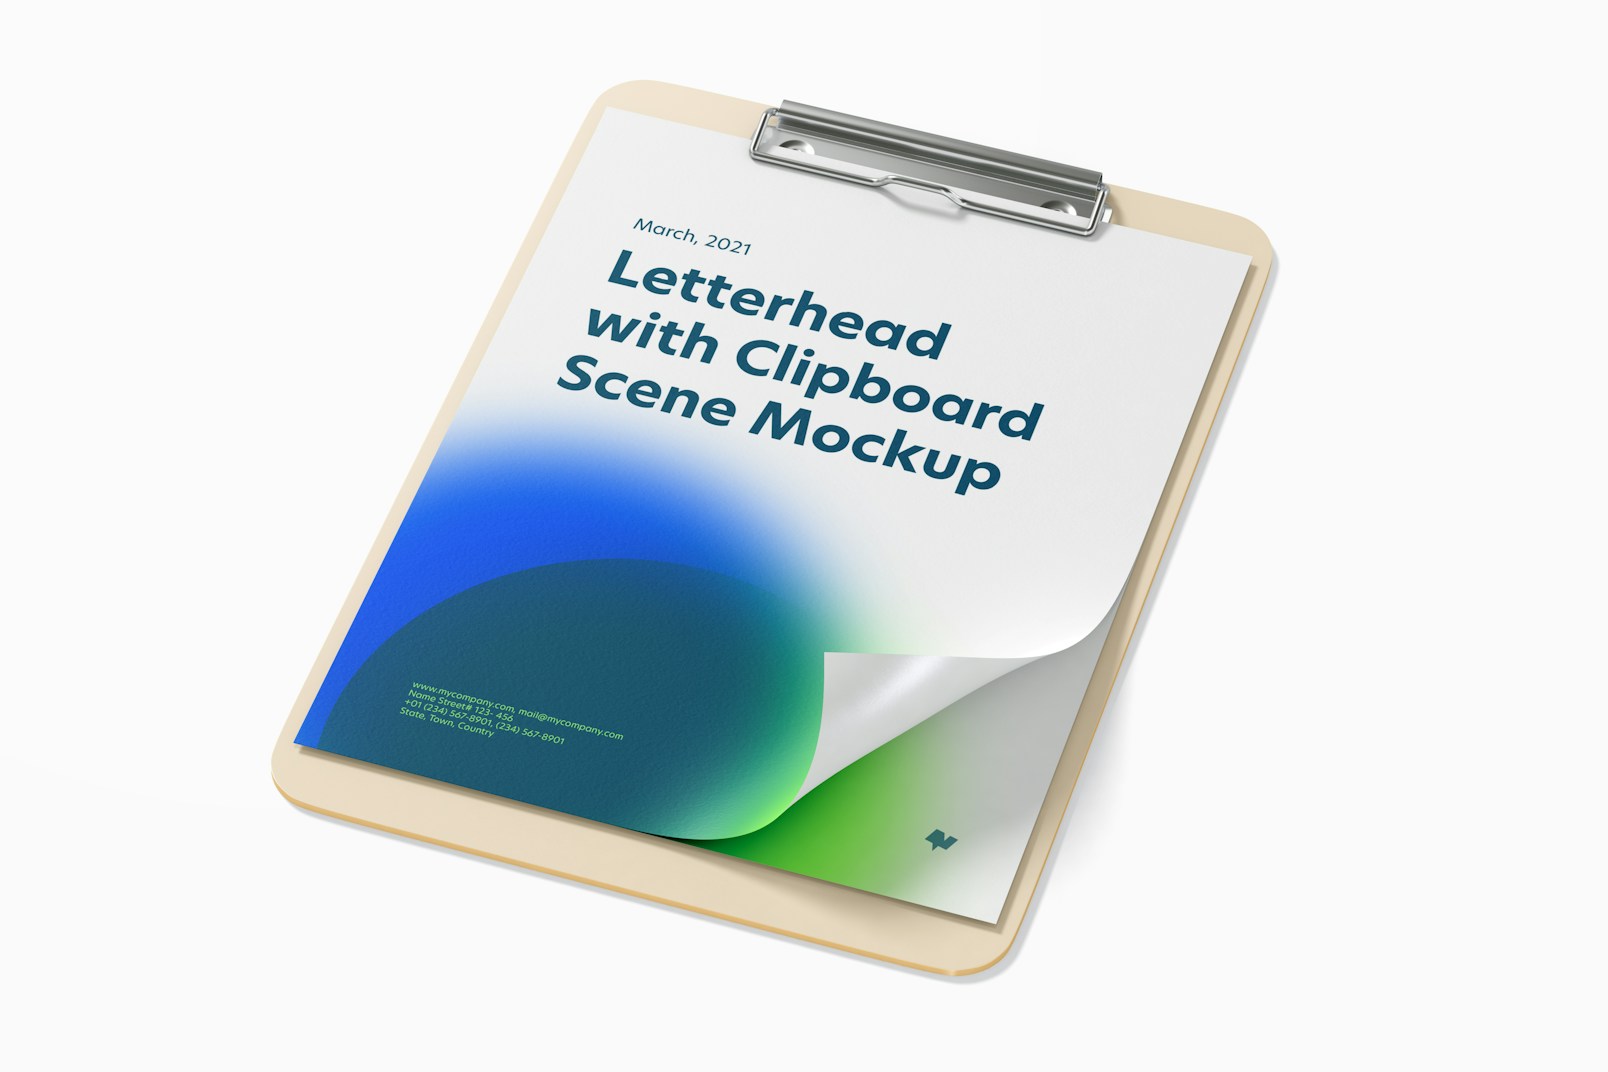 Letterhead with Clipboard Scene Mockup